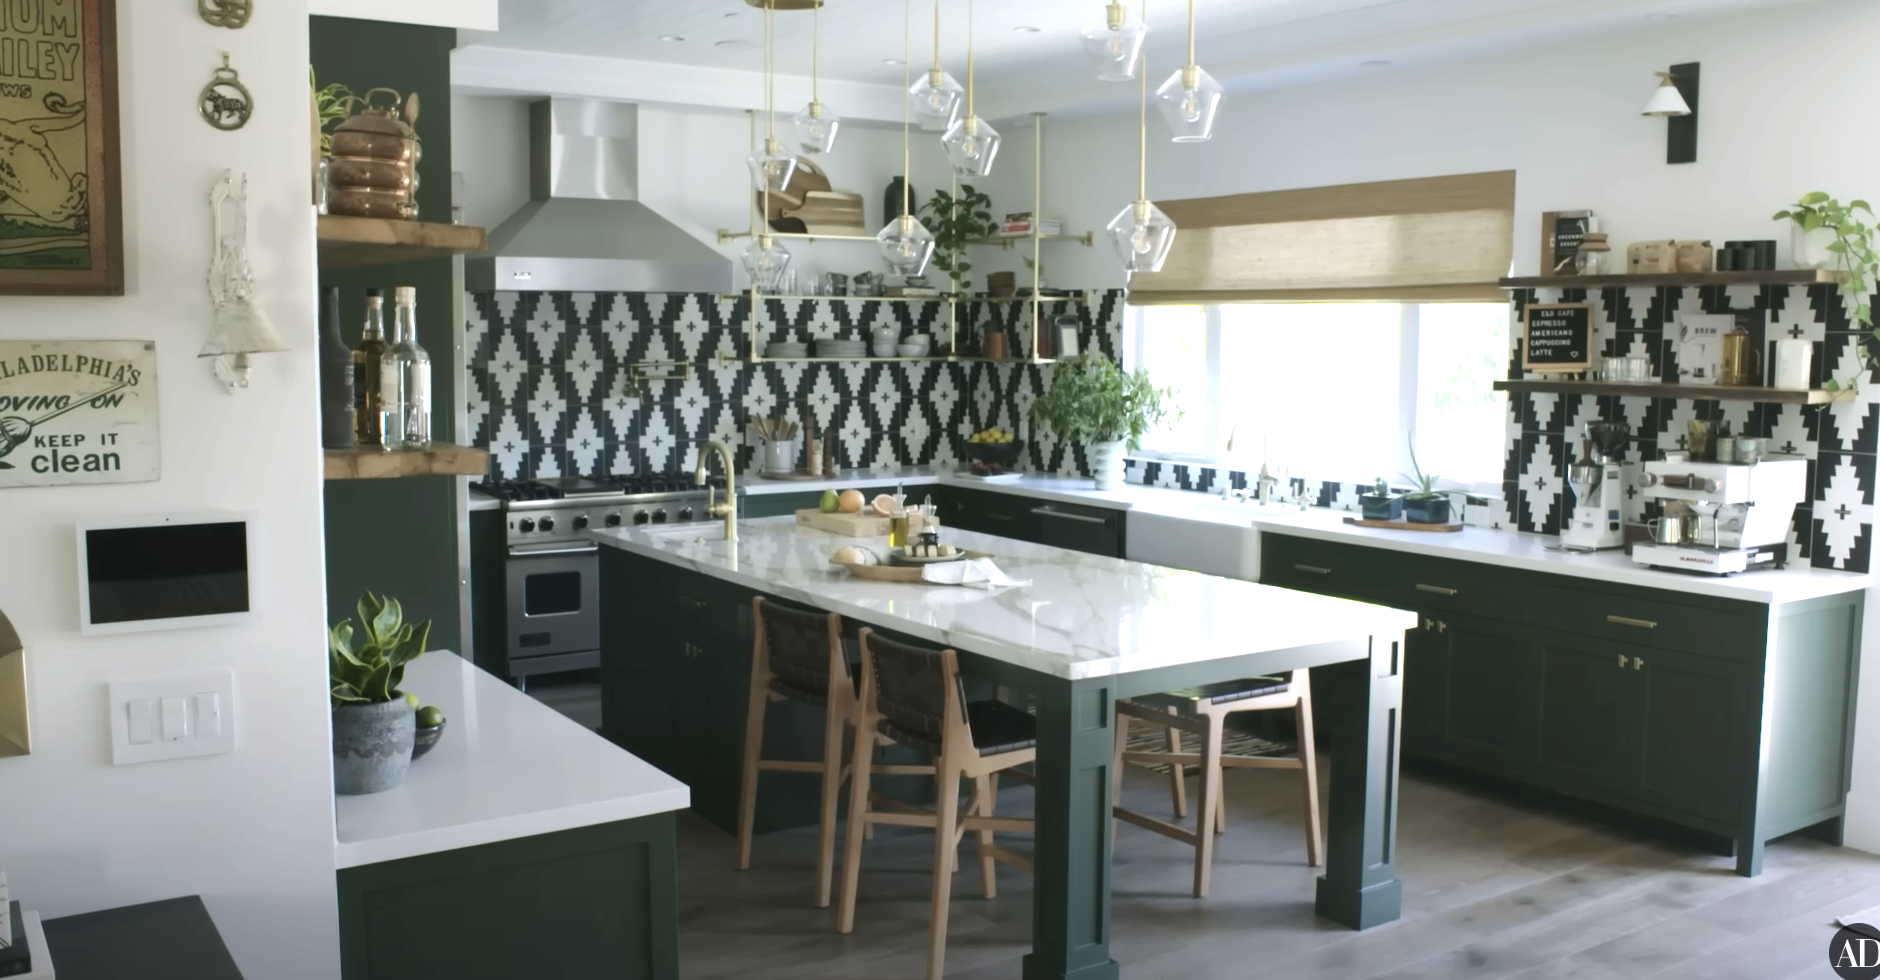 A boldly-patterned kitchen